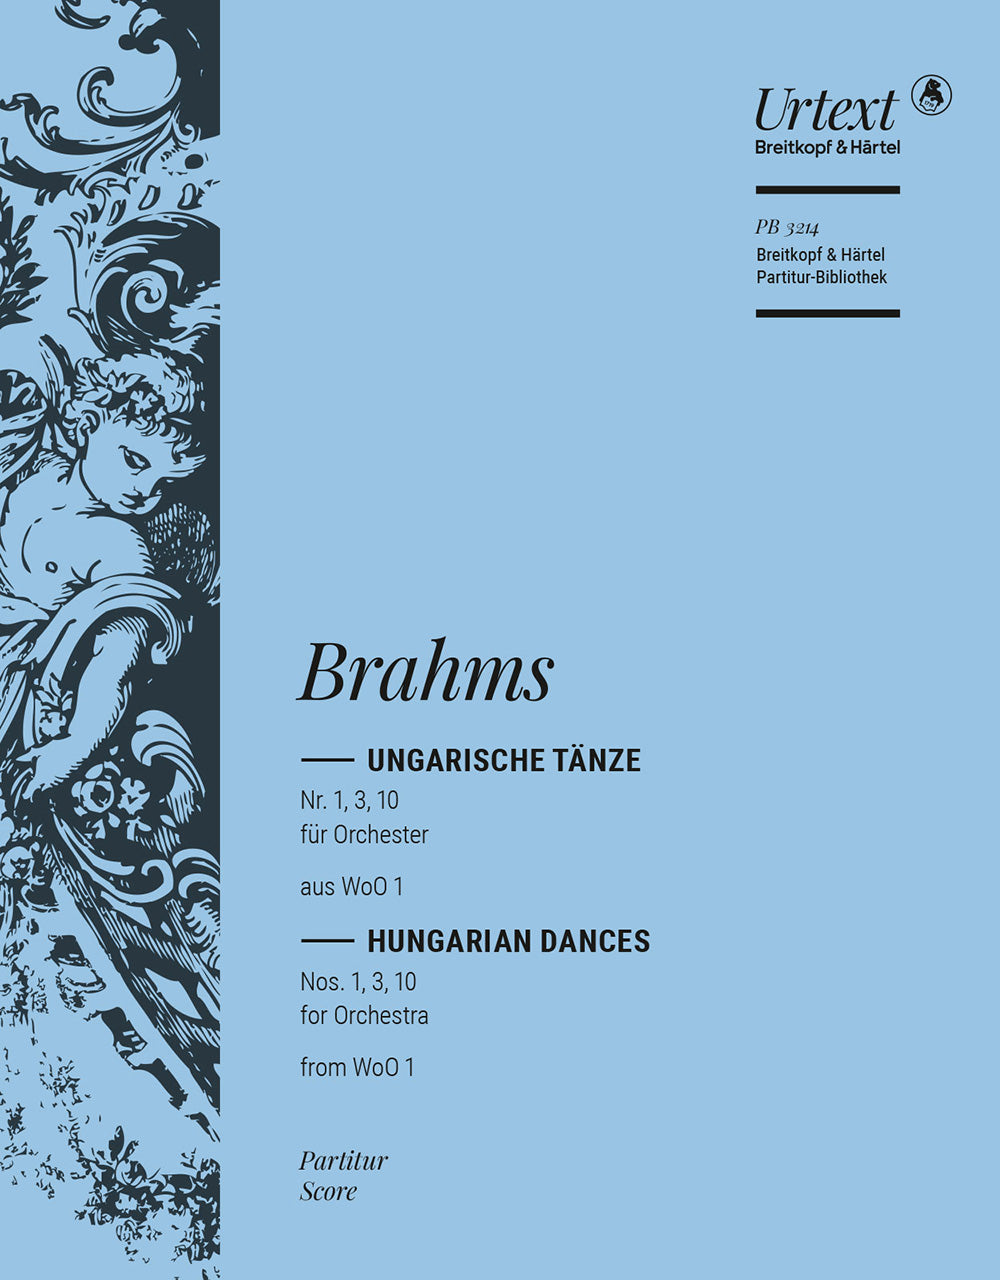 Brahms Hungarian Dances Nos. 1,3,10